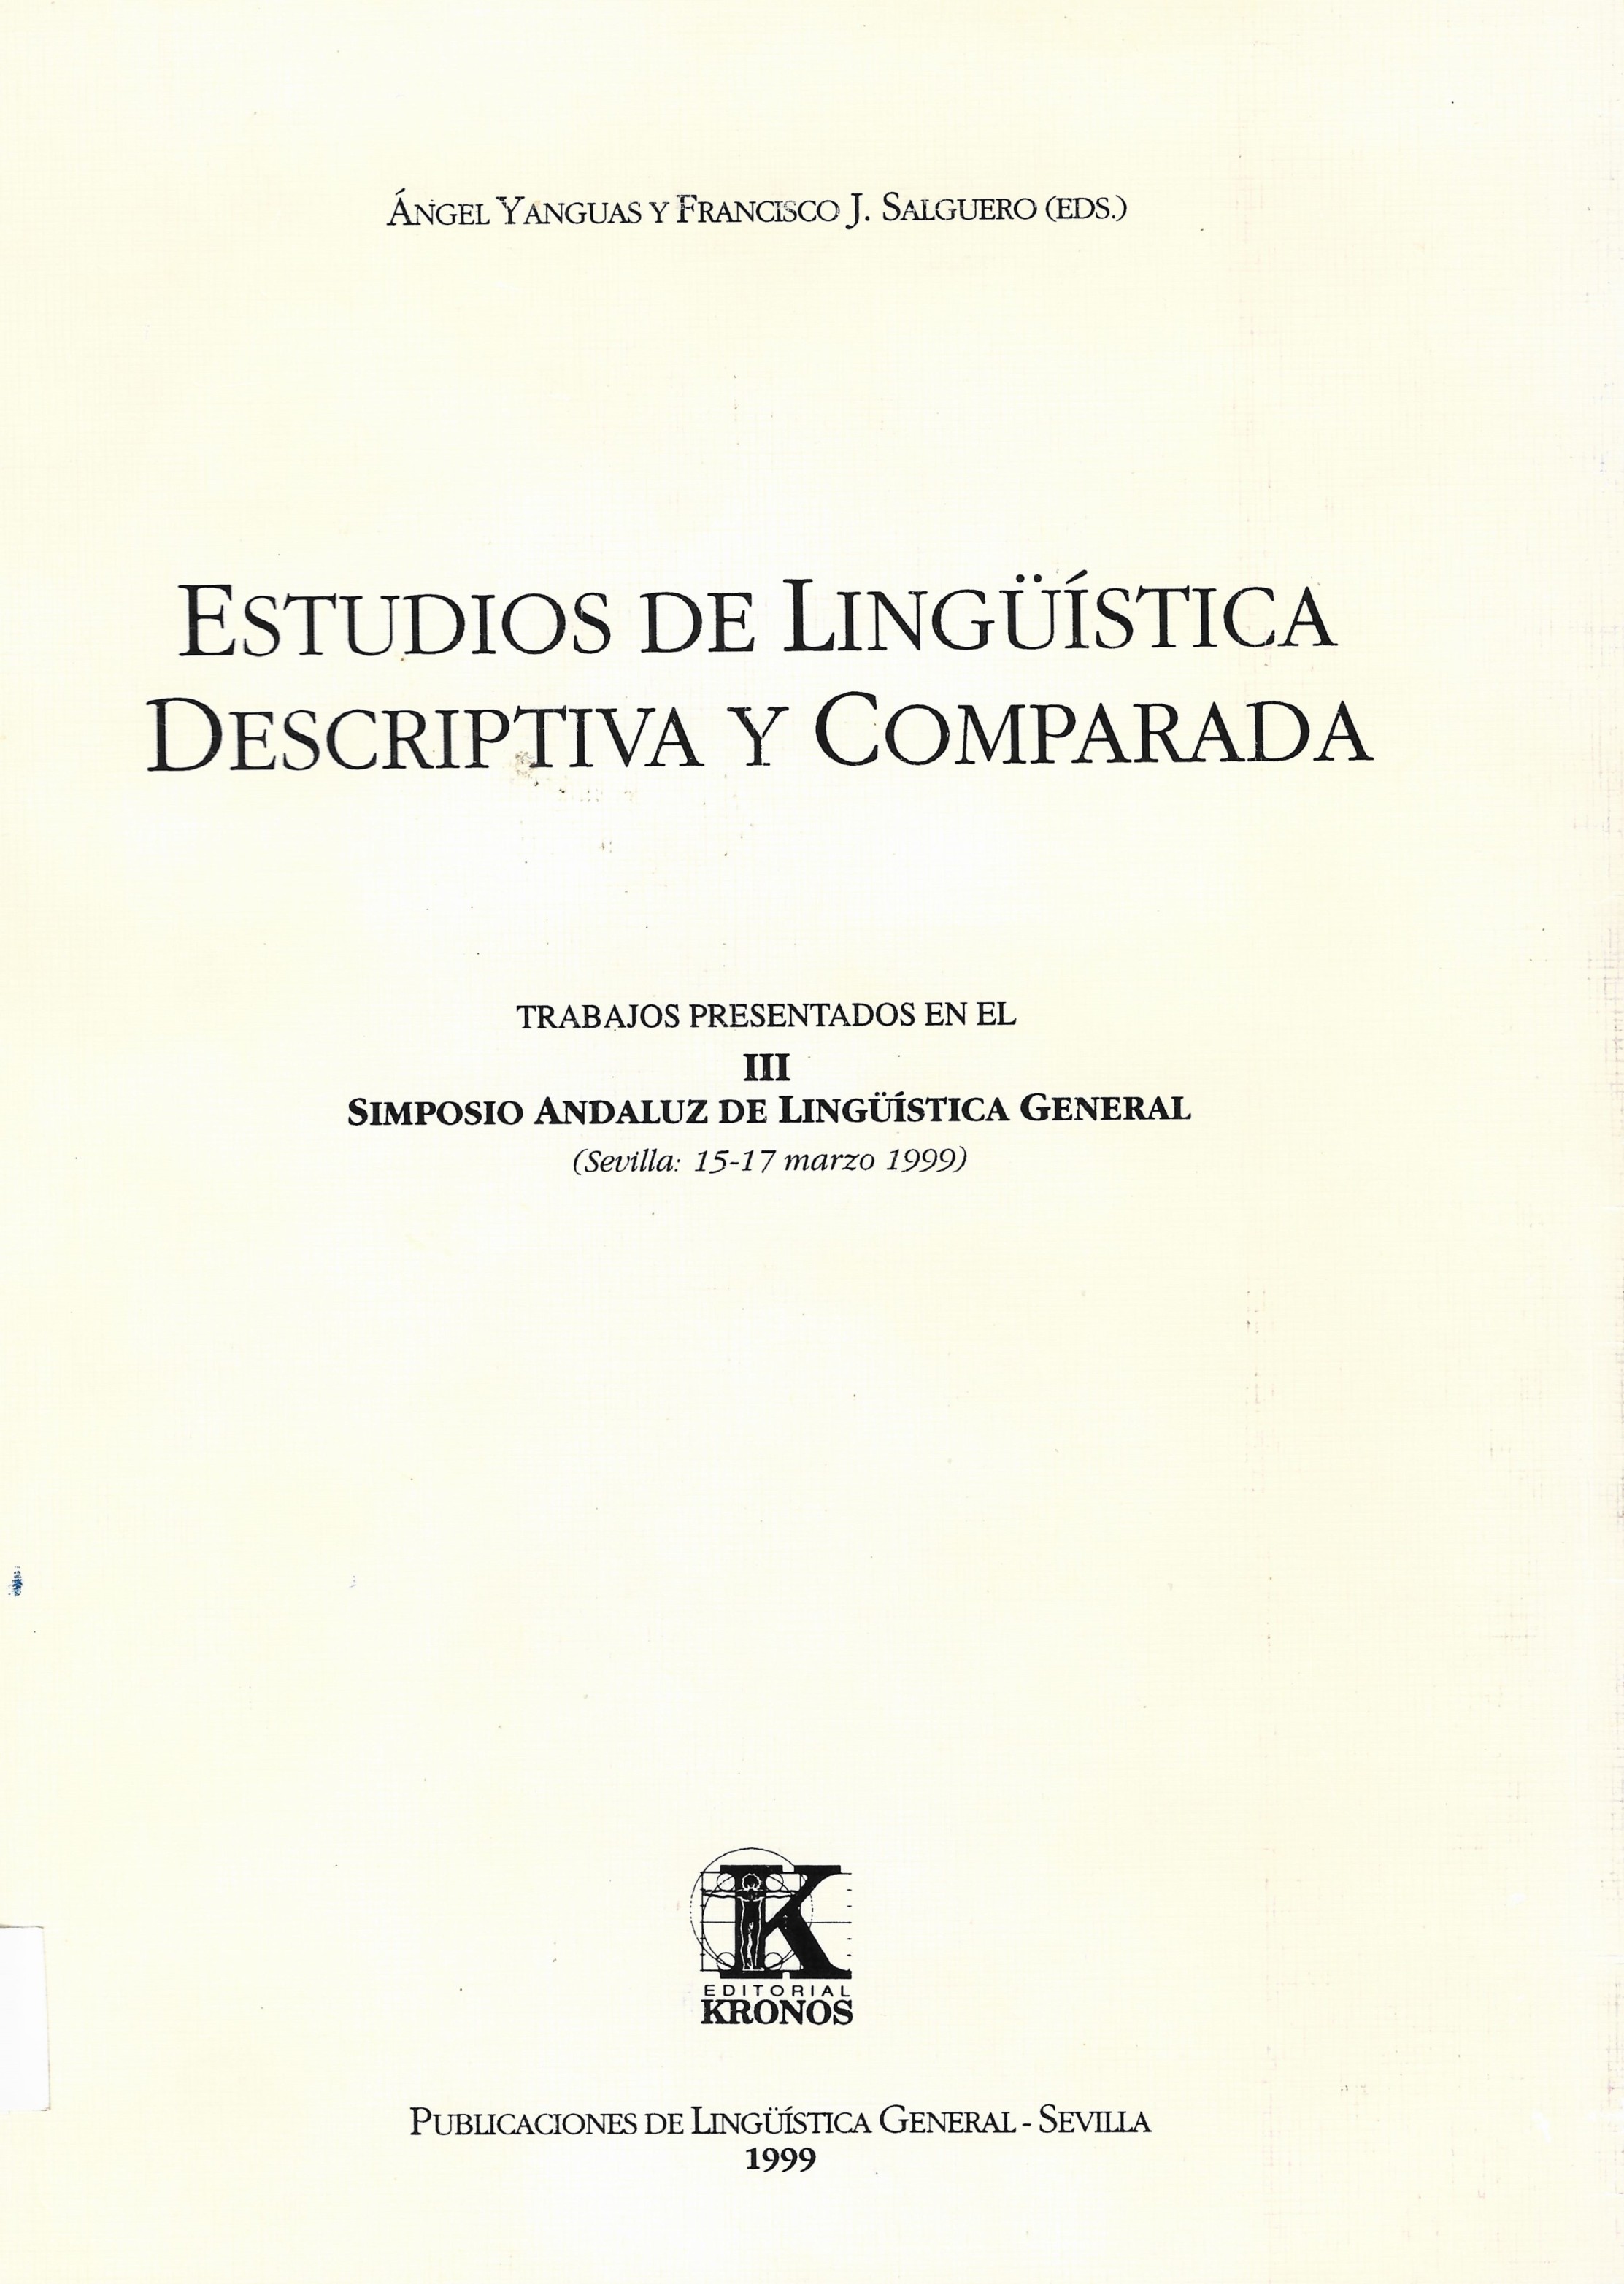 Imagen de portada del libro Estudios de lingüística descriptiva y comparada